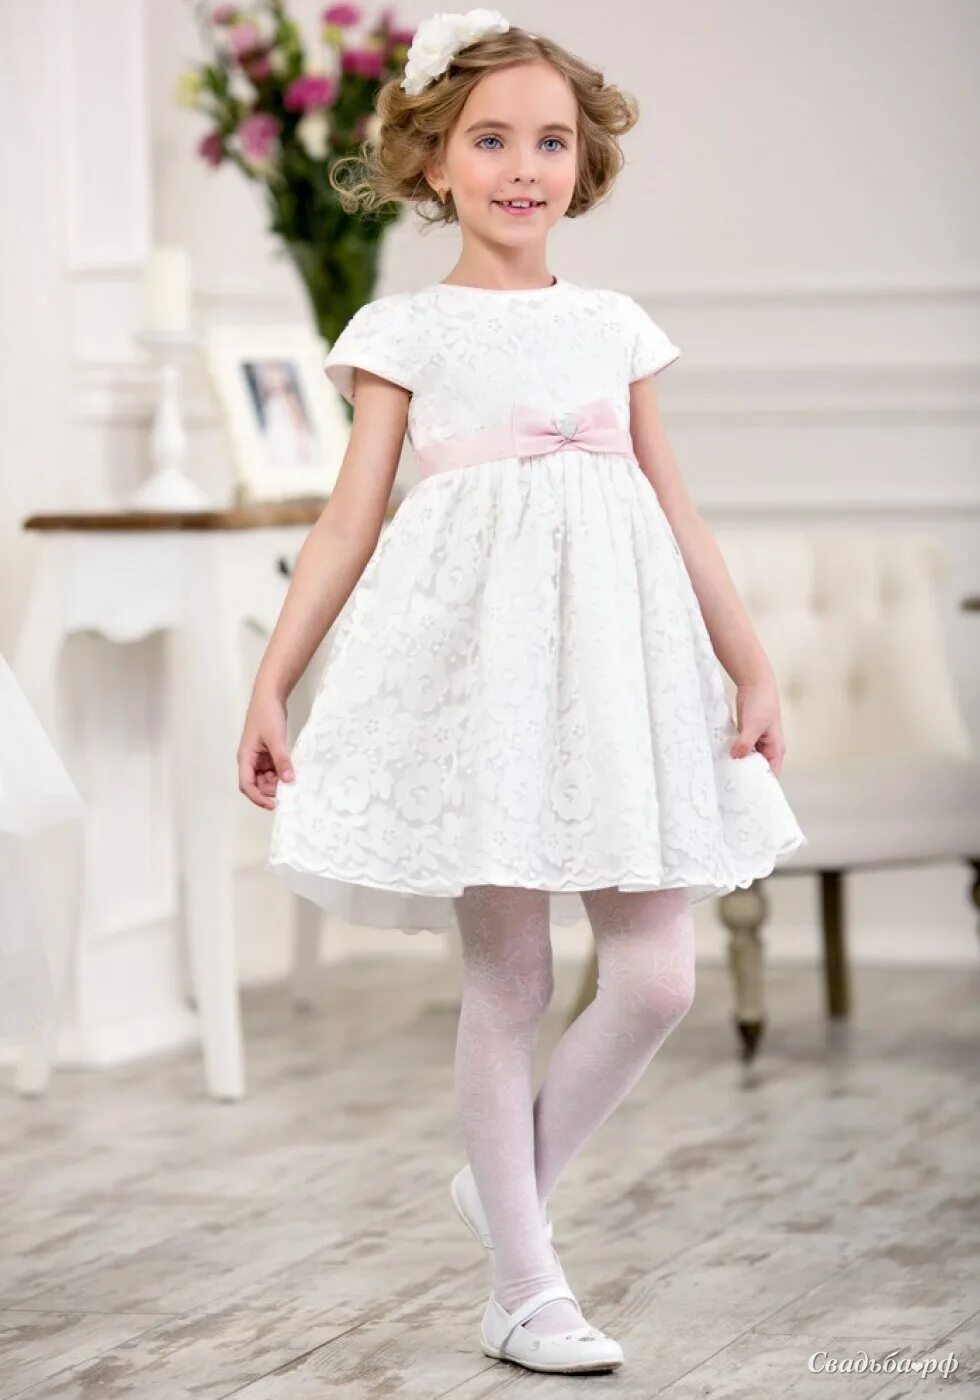 Платье ALOLIKA белое. Нарядное платье для девочки. Наря3н1е п2ат0е 32я 3ев1чки. Платье для девочки НАРЯ.